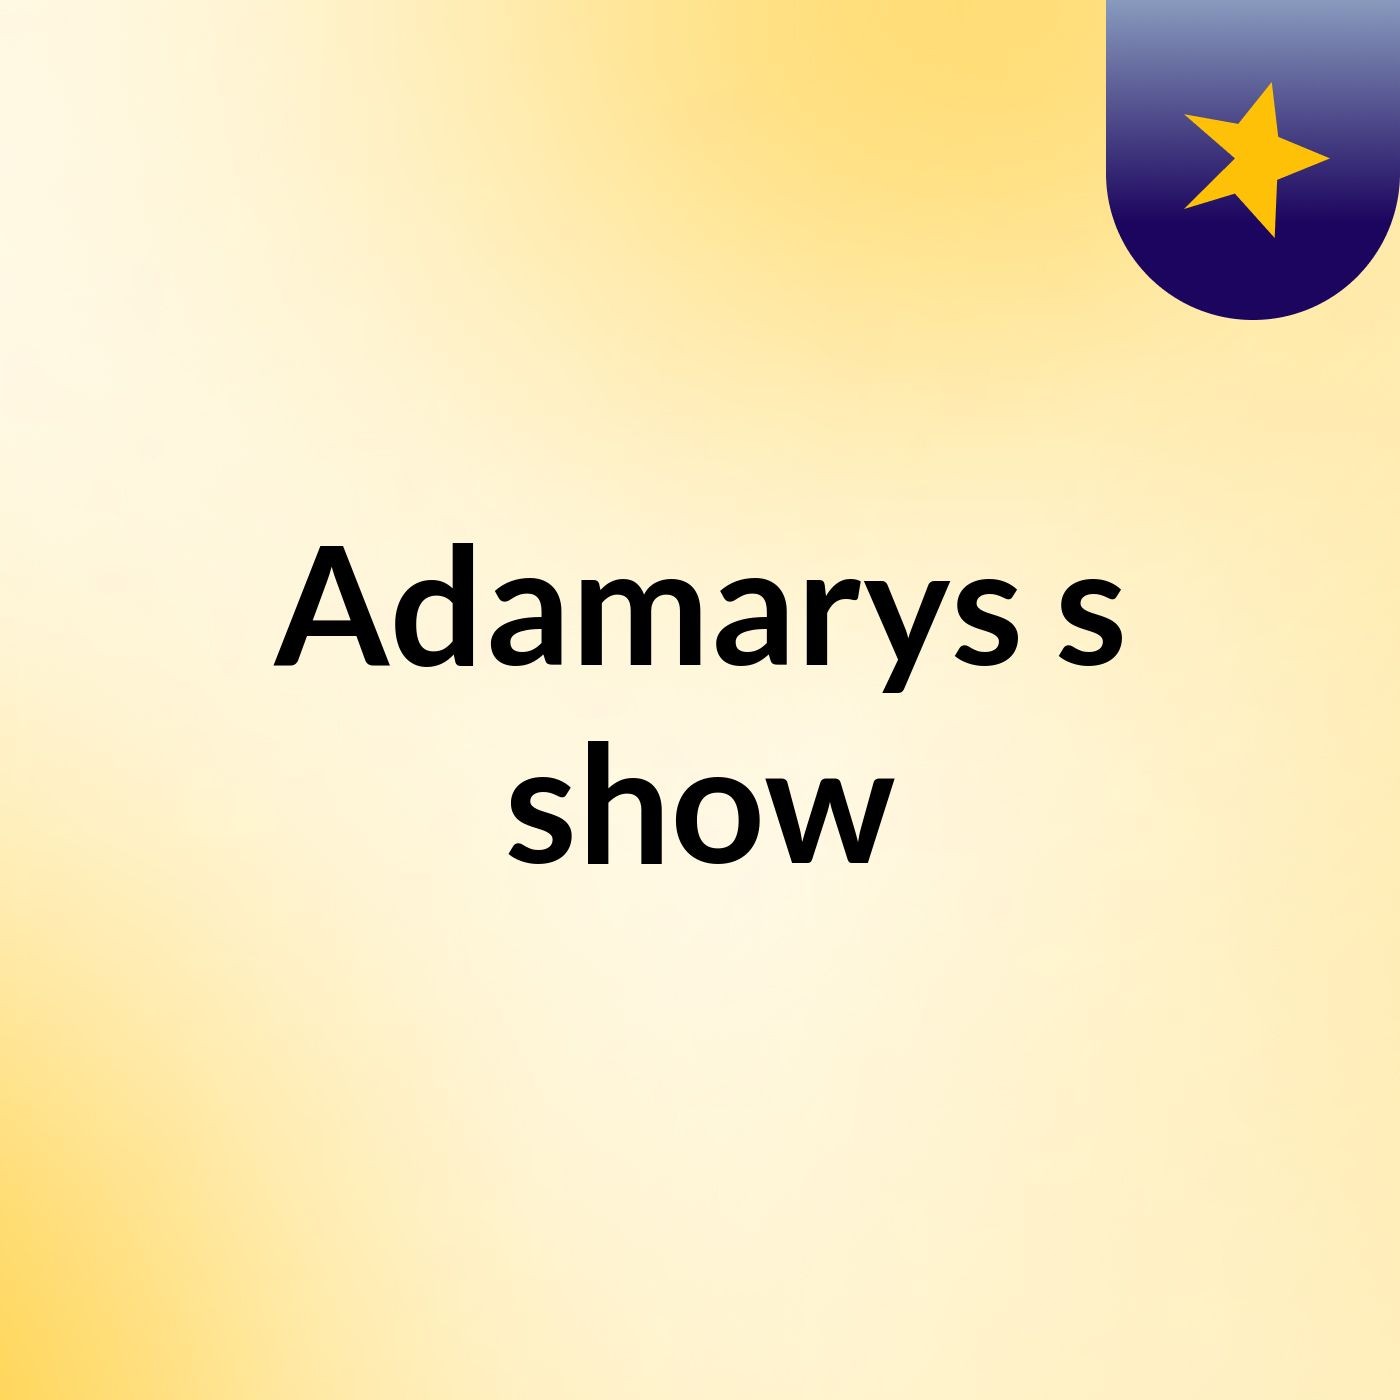 Adamarys's show